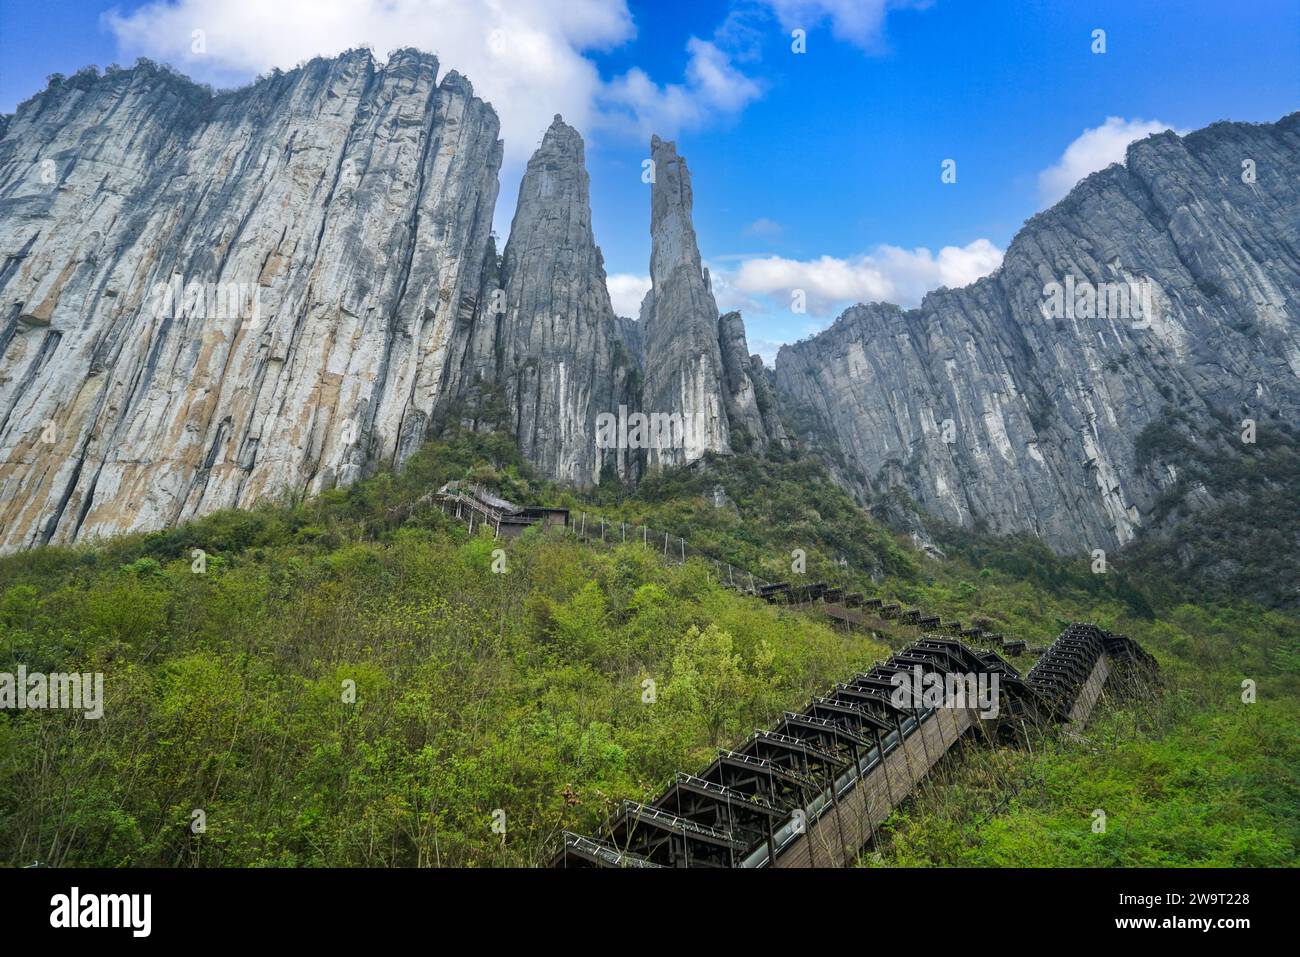 Es conocido como el Museo Natural de Topografía Karst y Maravilla Geológica. Zona escénica del Gran Cañón de Enshi Qixingzhai, ciudad de Enshi, Hubei, China. Foto de stock